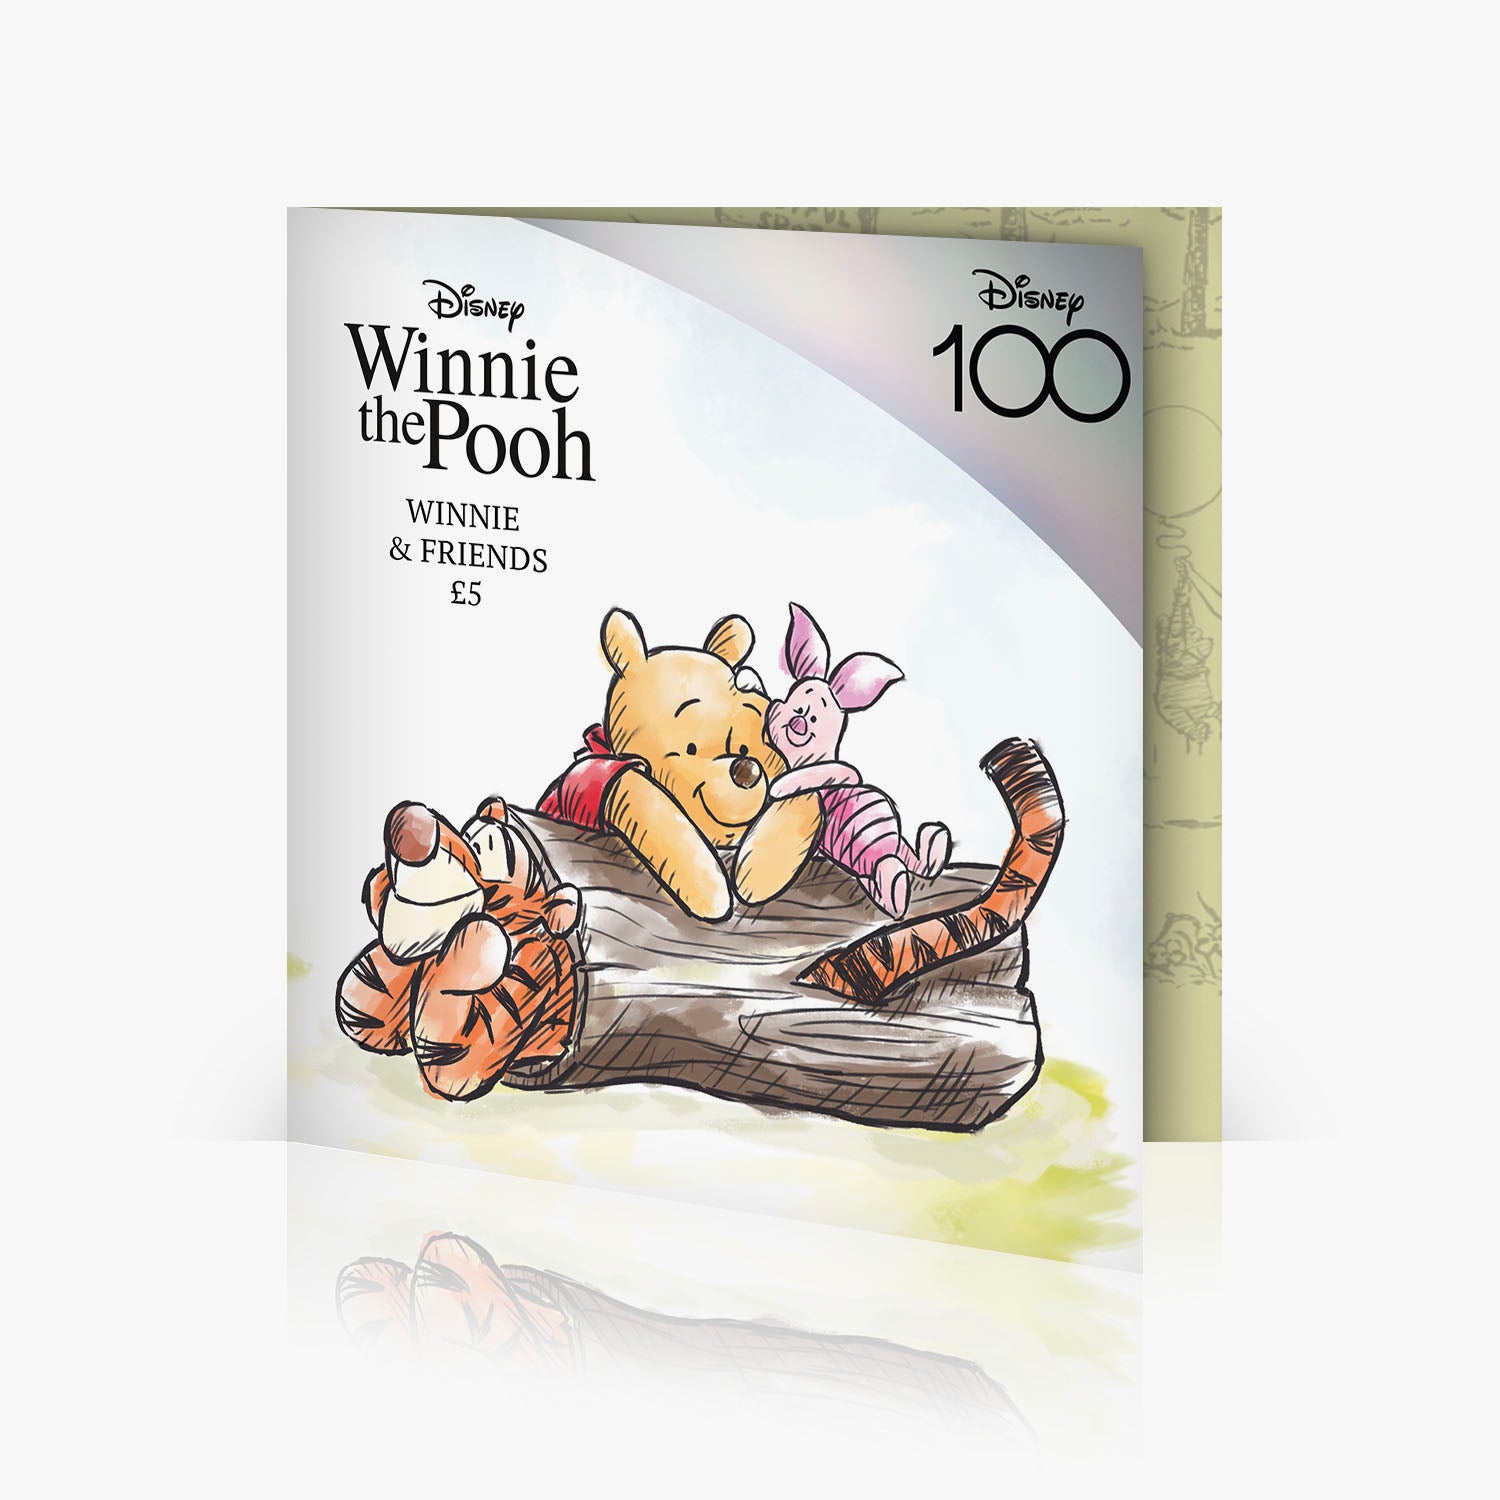 Winnie the Pooh & Friends 2023 £5 BU Colour Coin